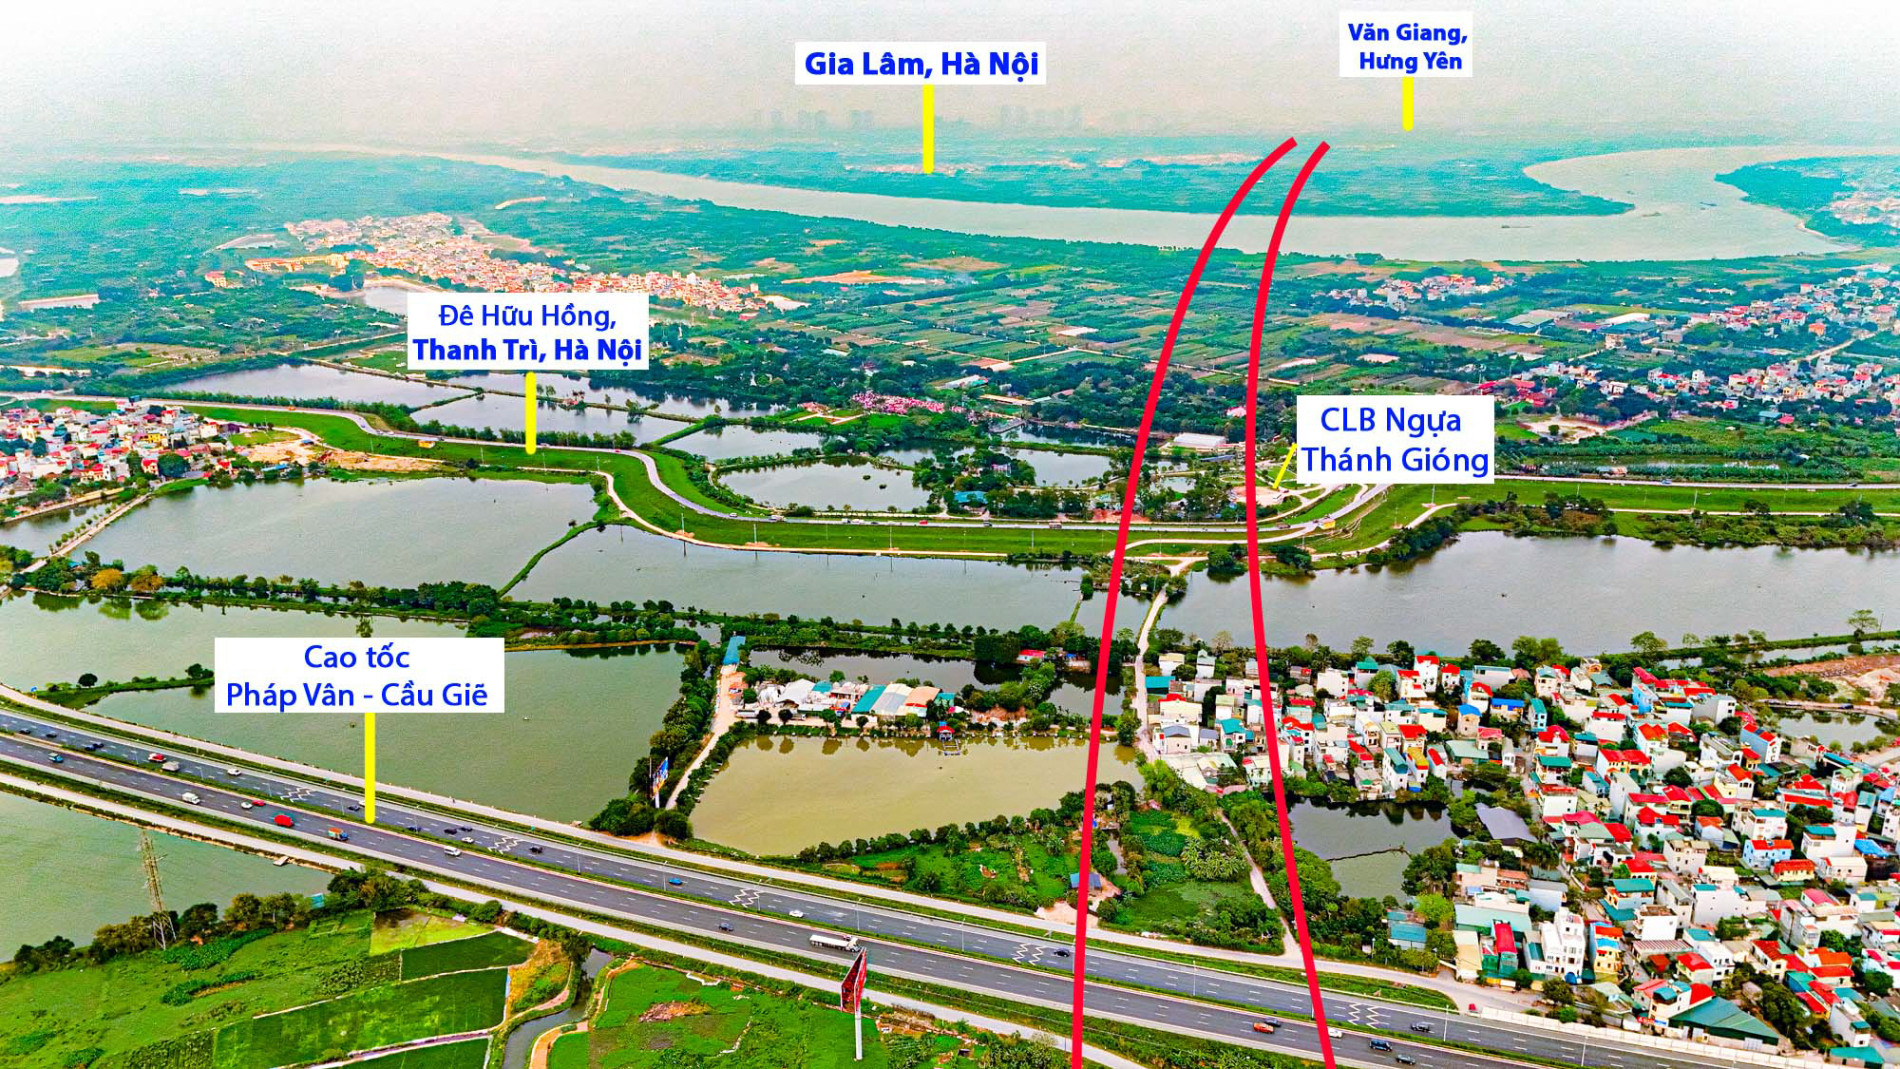 Toàn cảnh khu vực được quy hoạch xây cầu vượt sông Hồng, xung quanh là 3 siêu đô thị trị giá 13 tỷ USD lớn bậc nhất phía Bắc- Ảnh 9.